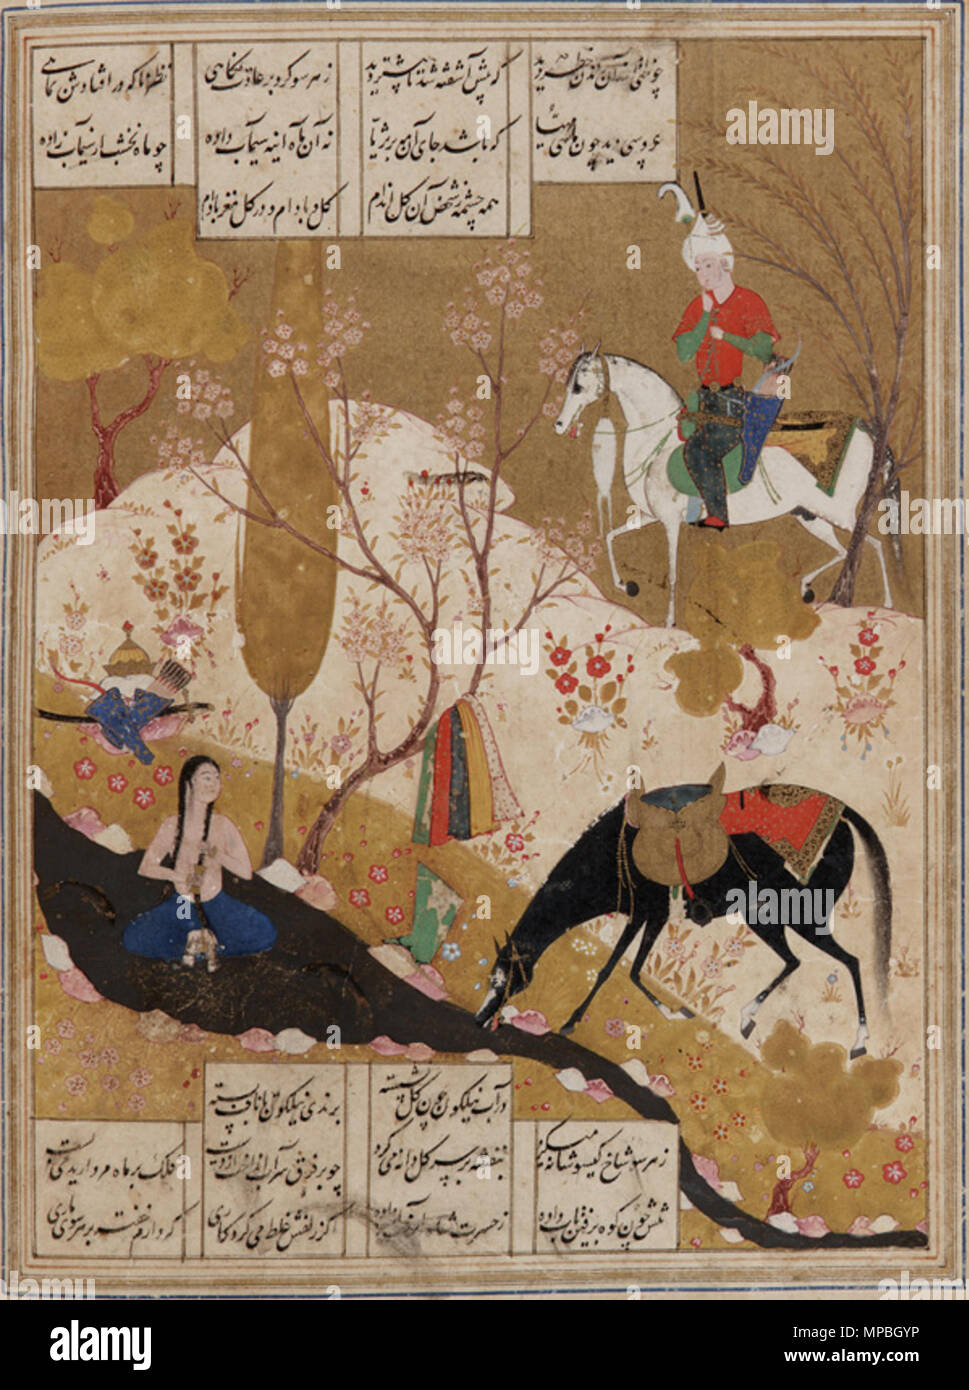 Khusraw découvre Shirin baignade dans une piscine d'une Khamsa (Quintet) milieu 16ème siècle, la dynastie safavide. 930 - Nizami Khusraw découvre Shirin baignade dans une piscine Banque D'Images